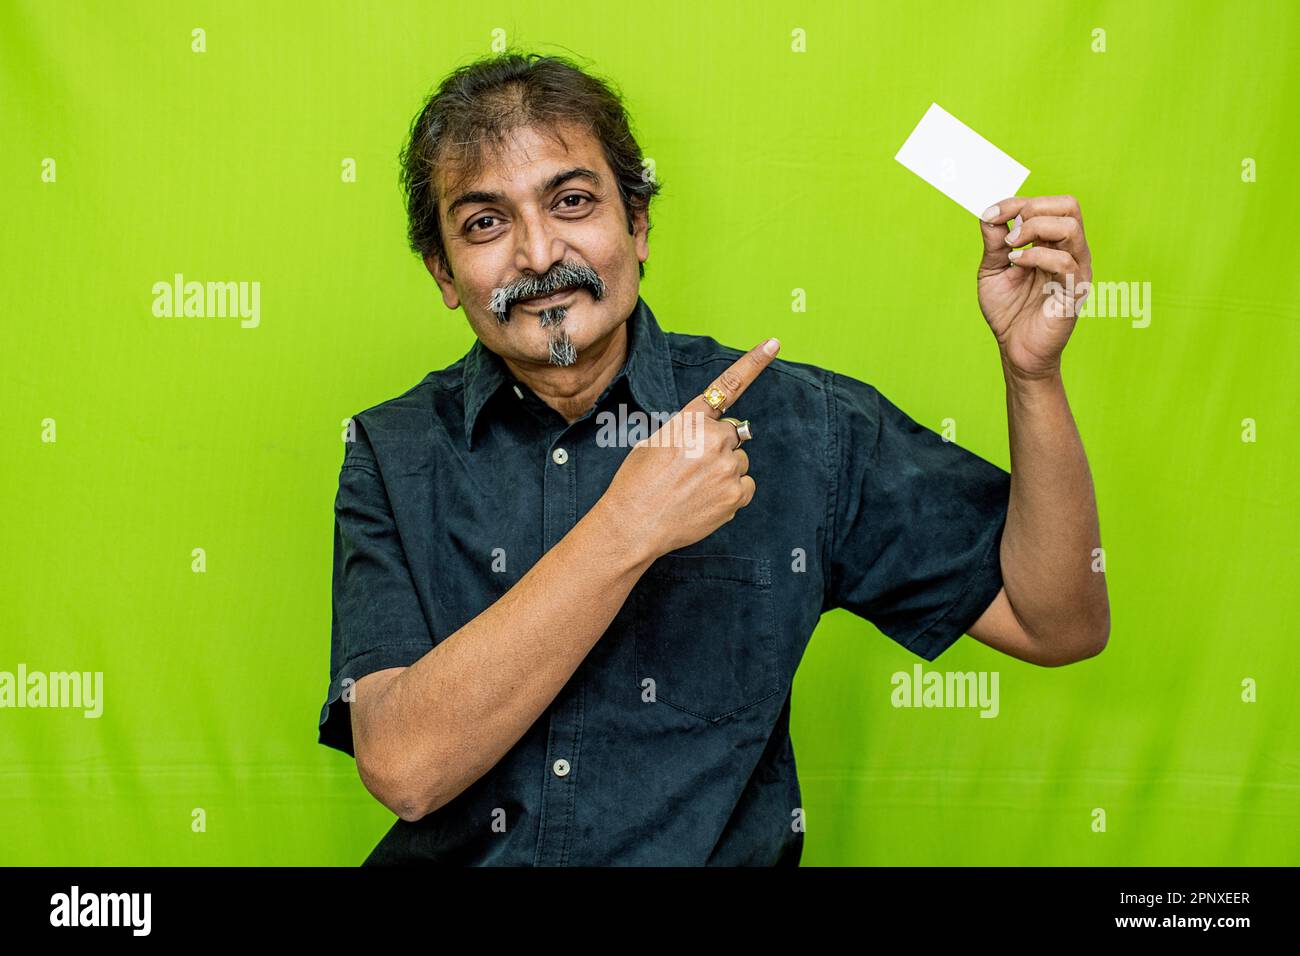 Geschäftsmann in schwarzem Hemd, lächelt mit einer leeren Karte in der linken Hand und zeigt mit der rechten auf den grünen Hintergrund Stockfoto